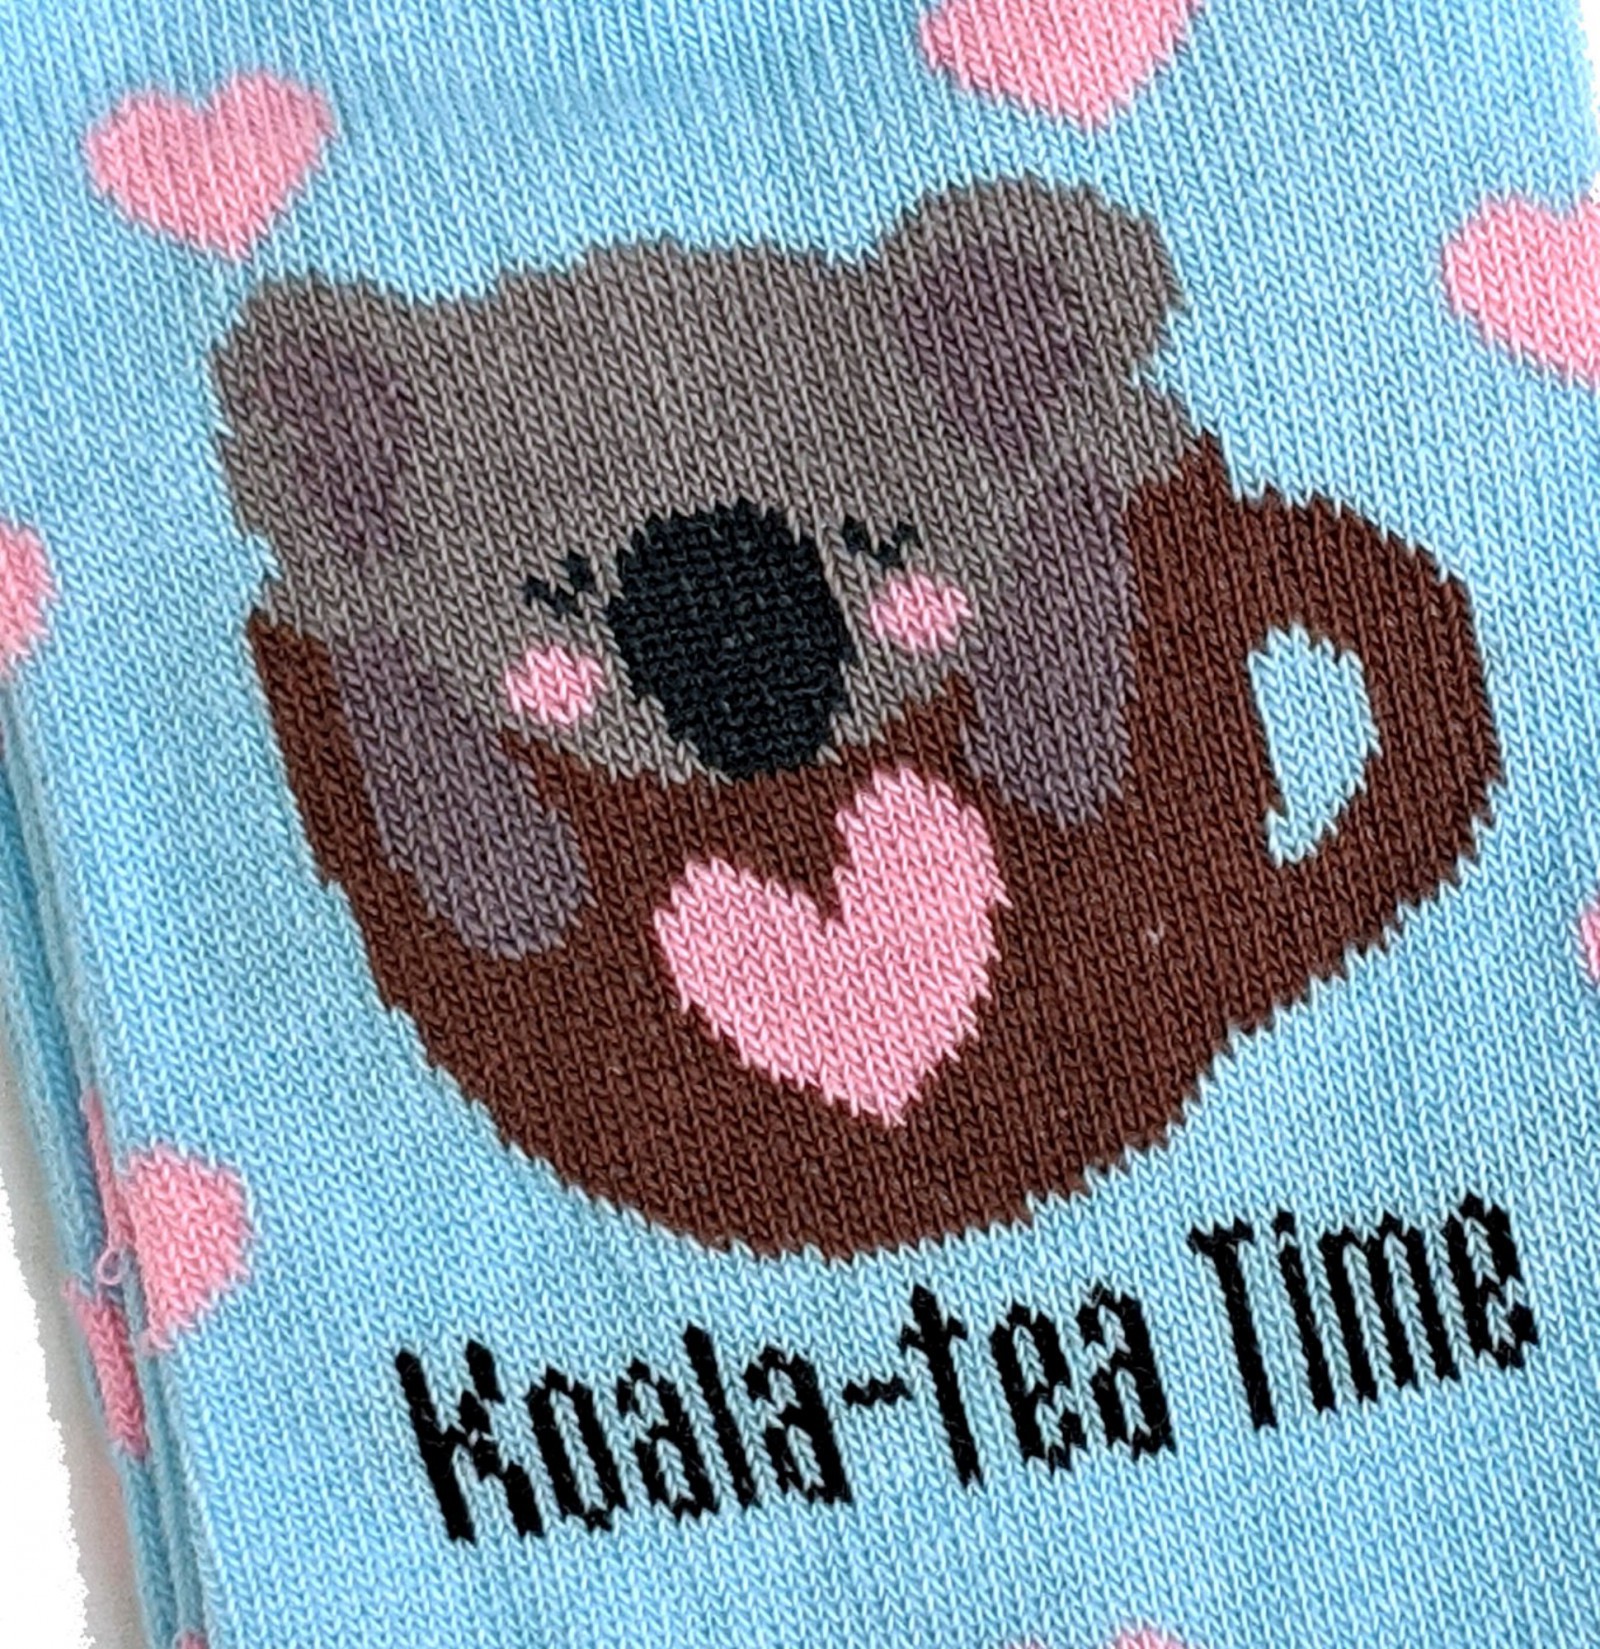 Damen Koala-Bär Koala-Tea Quality Time Socken 37-42 